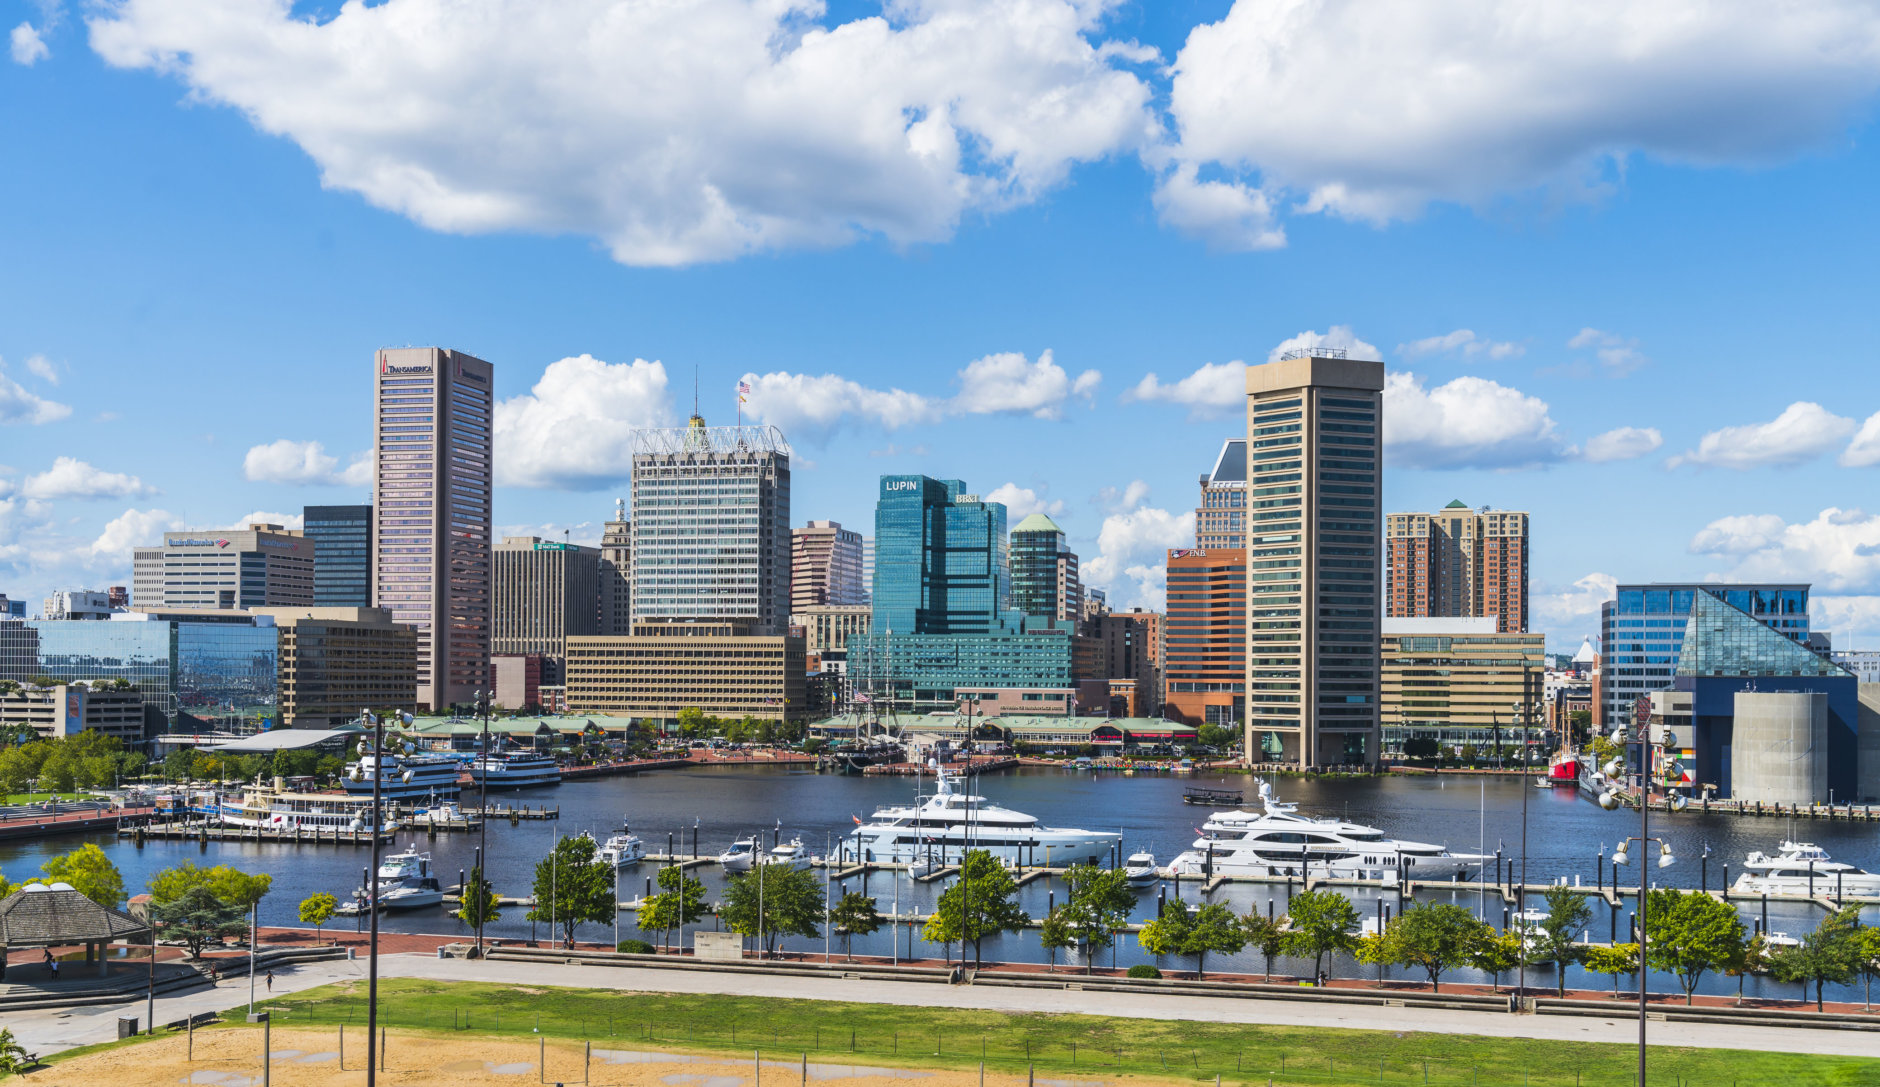 baltimore,maryland,usa. 09-07-17 :  Baltimore skyline on sunny day.